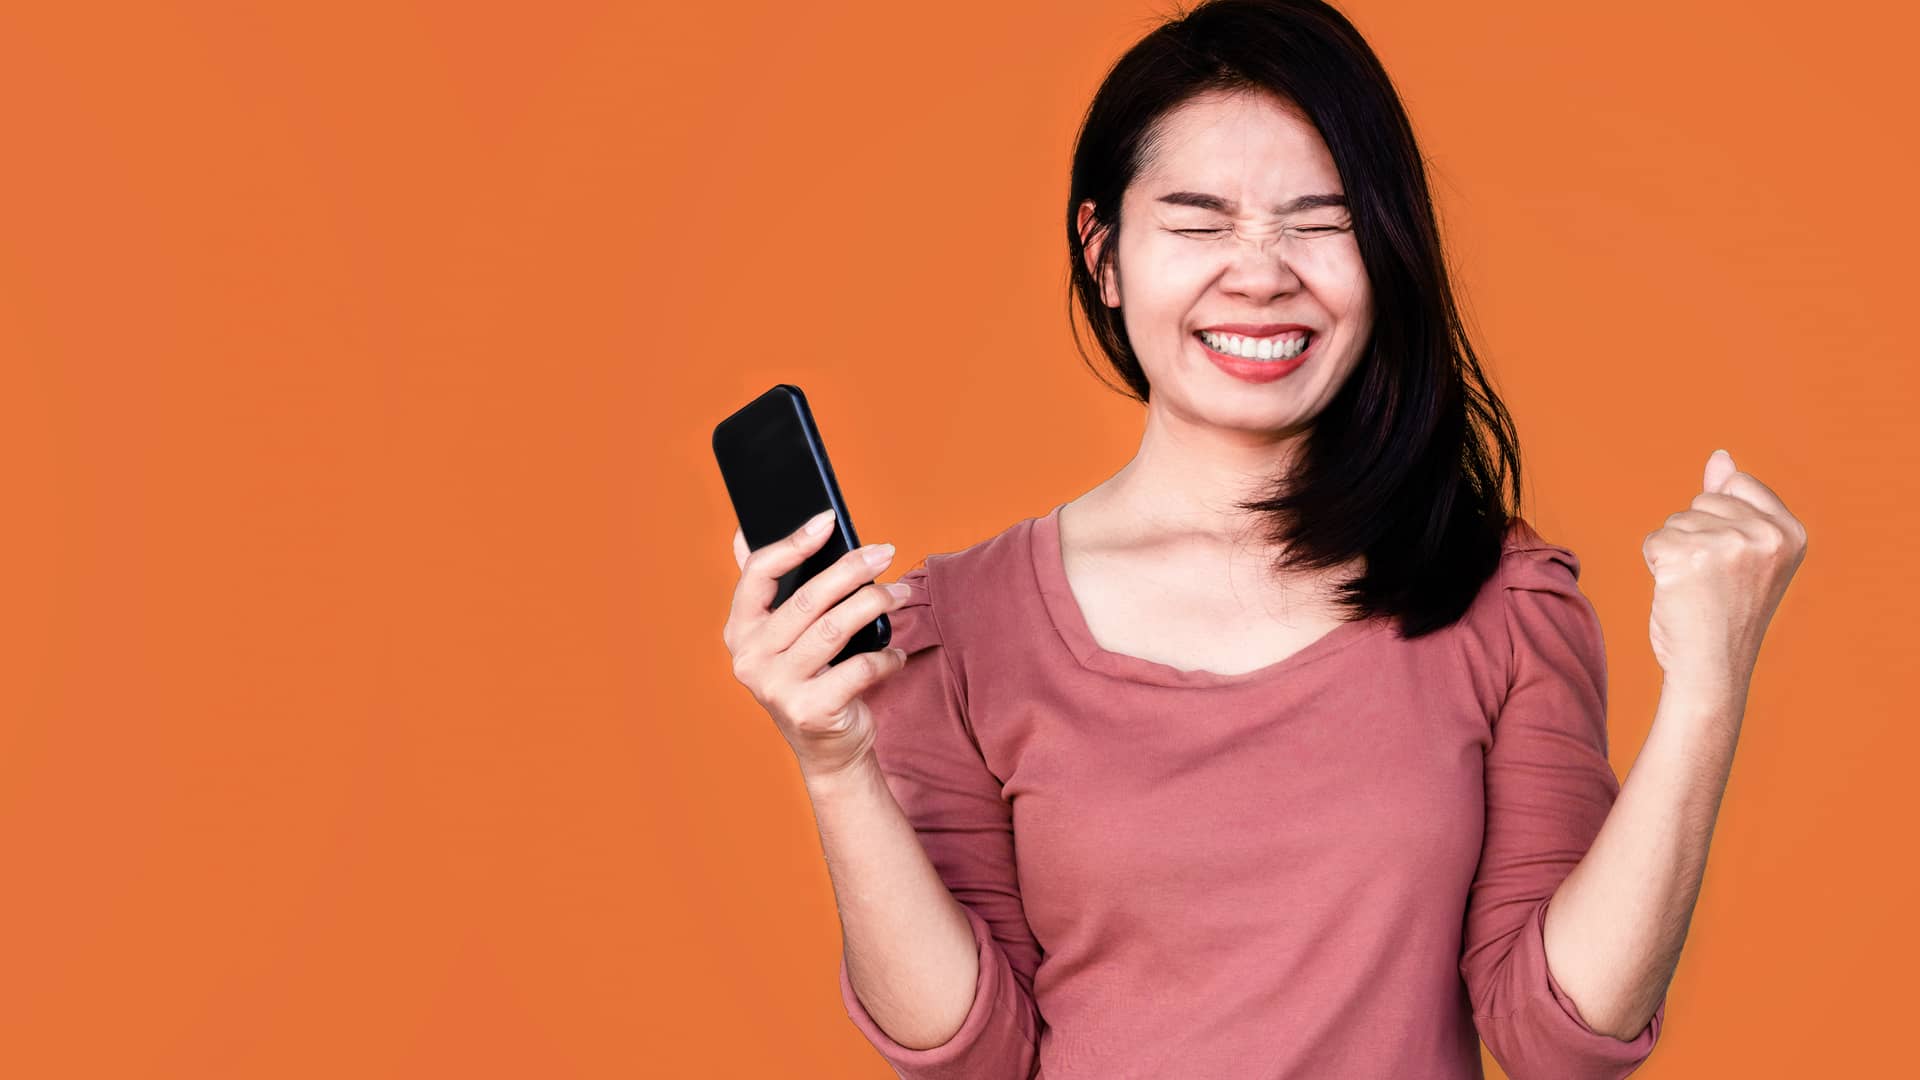 Mujer contenta porque ha recargado su smartphone y ha gando un premio